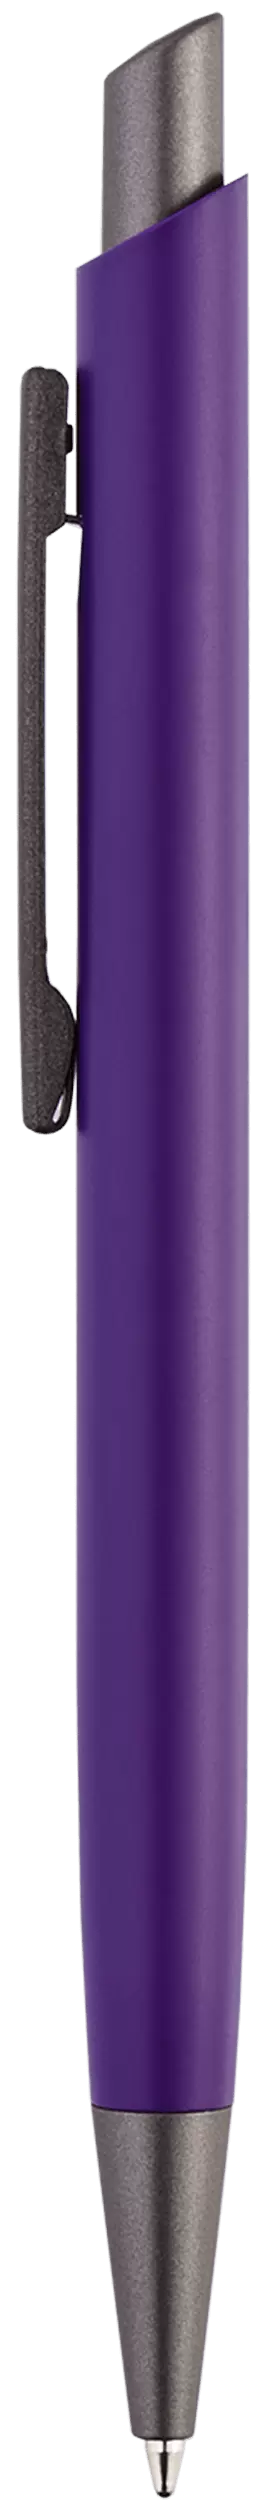 Ручка ELFARO TITAN Фиолетовая 3052.11